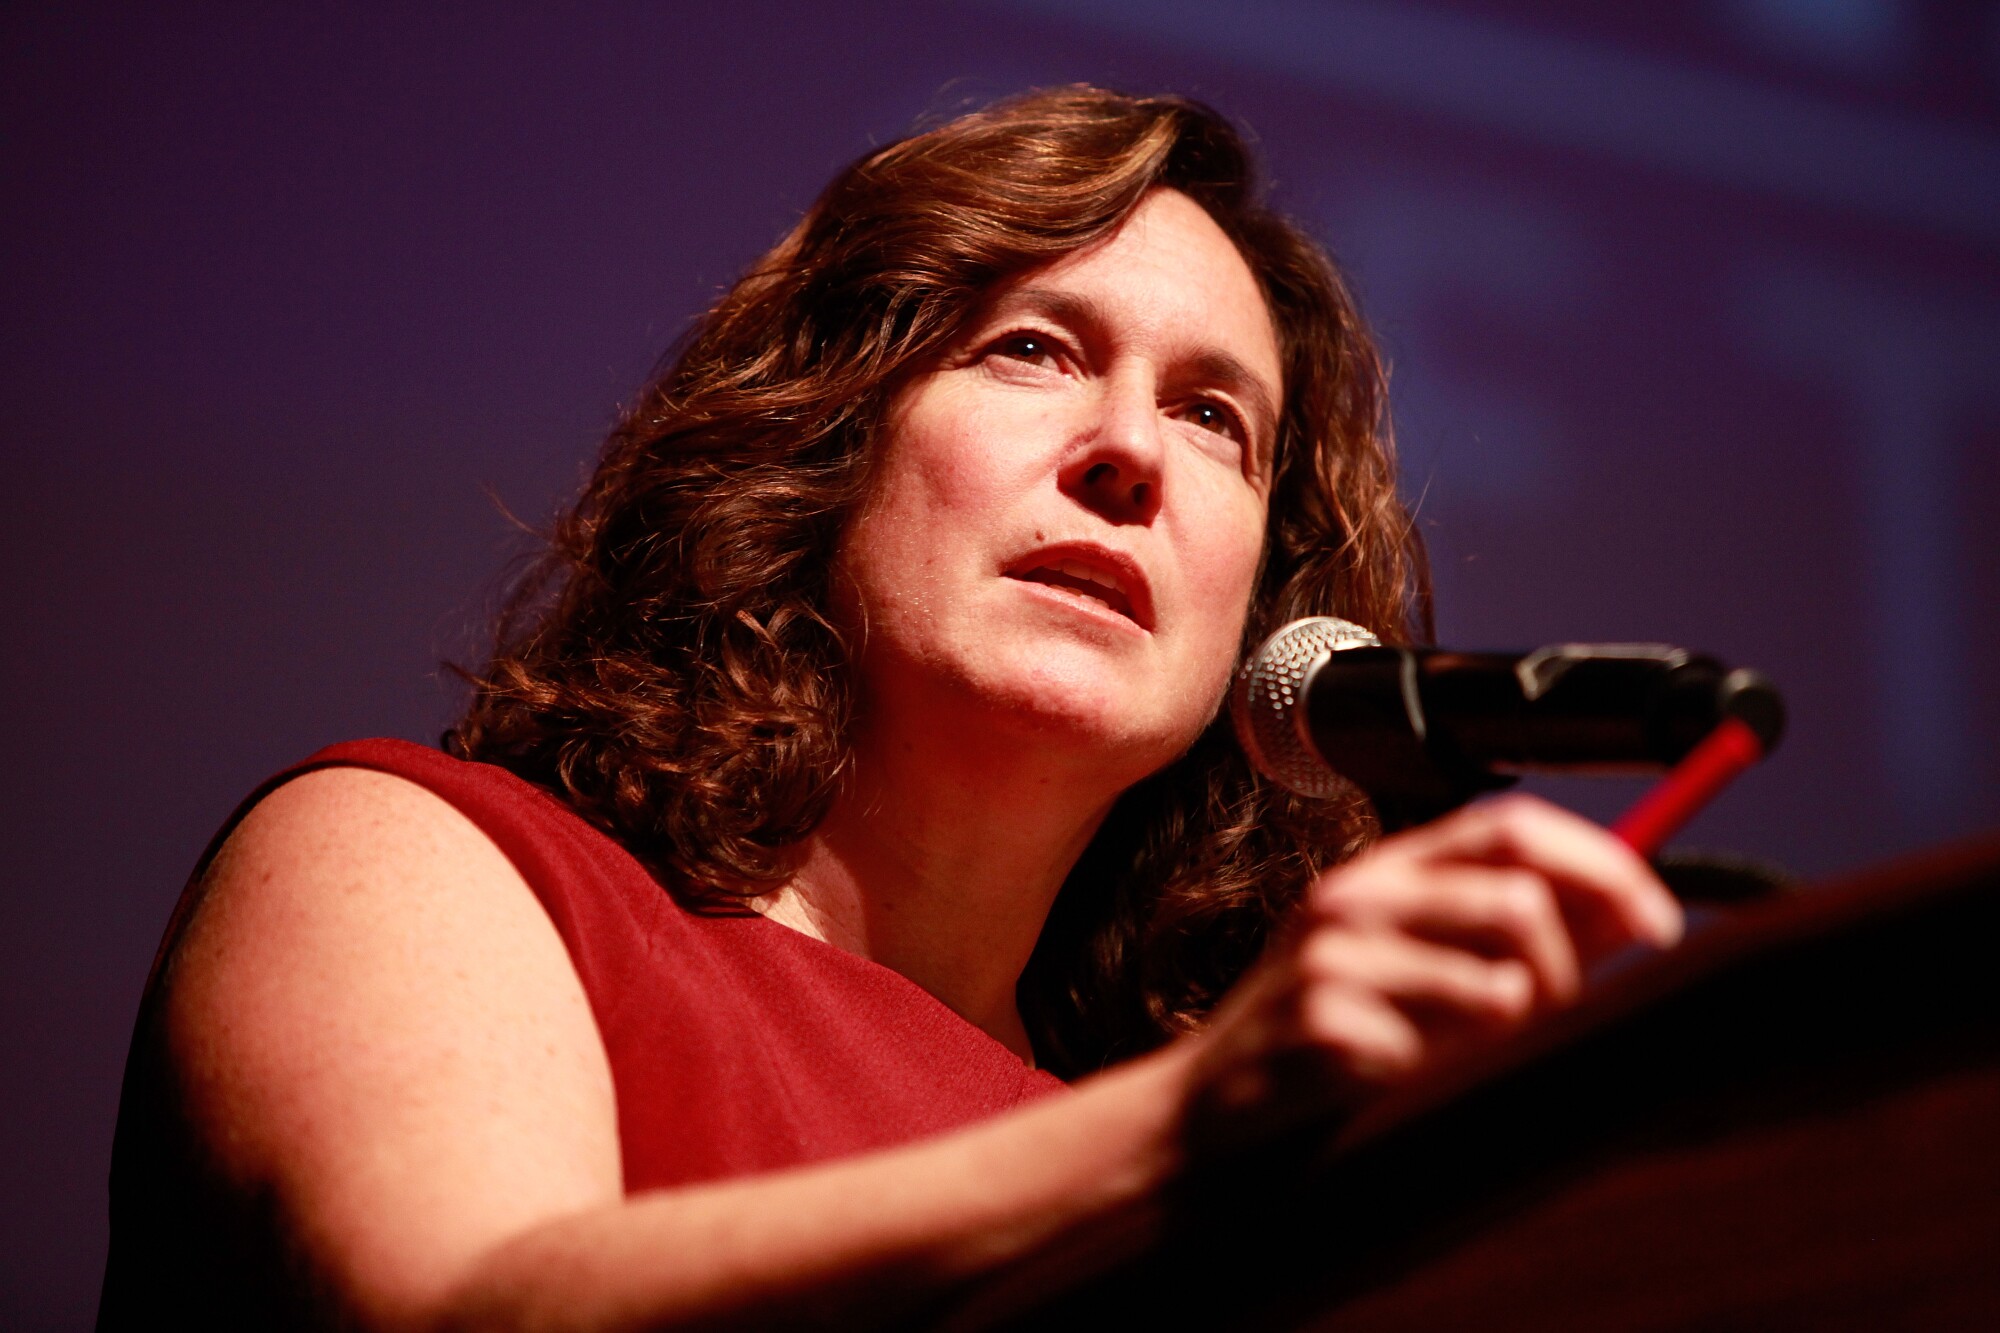 U.S. Deputy Secretary of Education Cindy Marten 